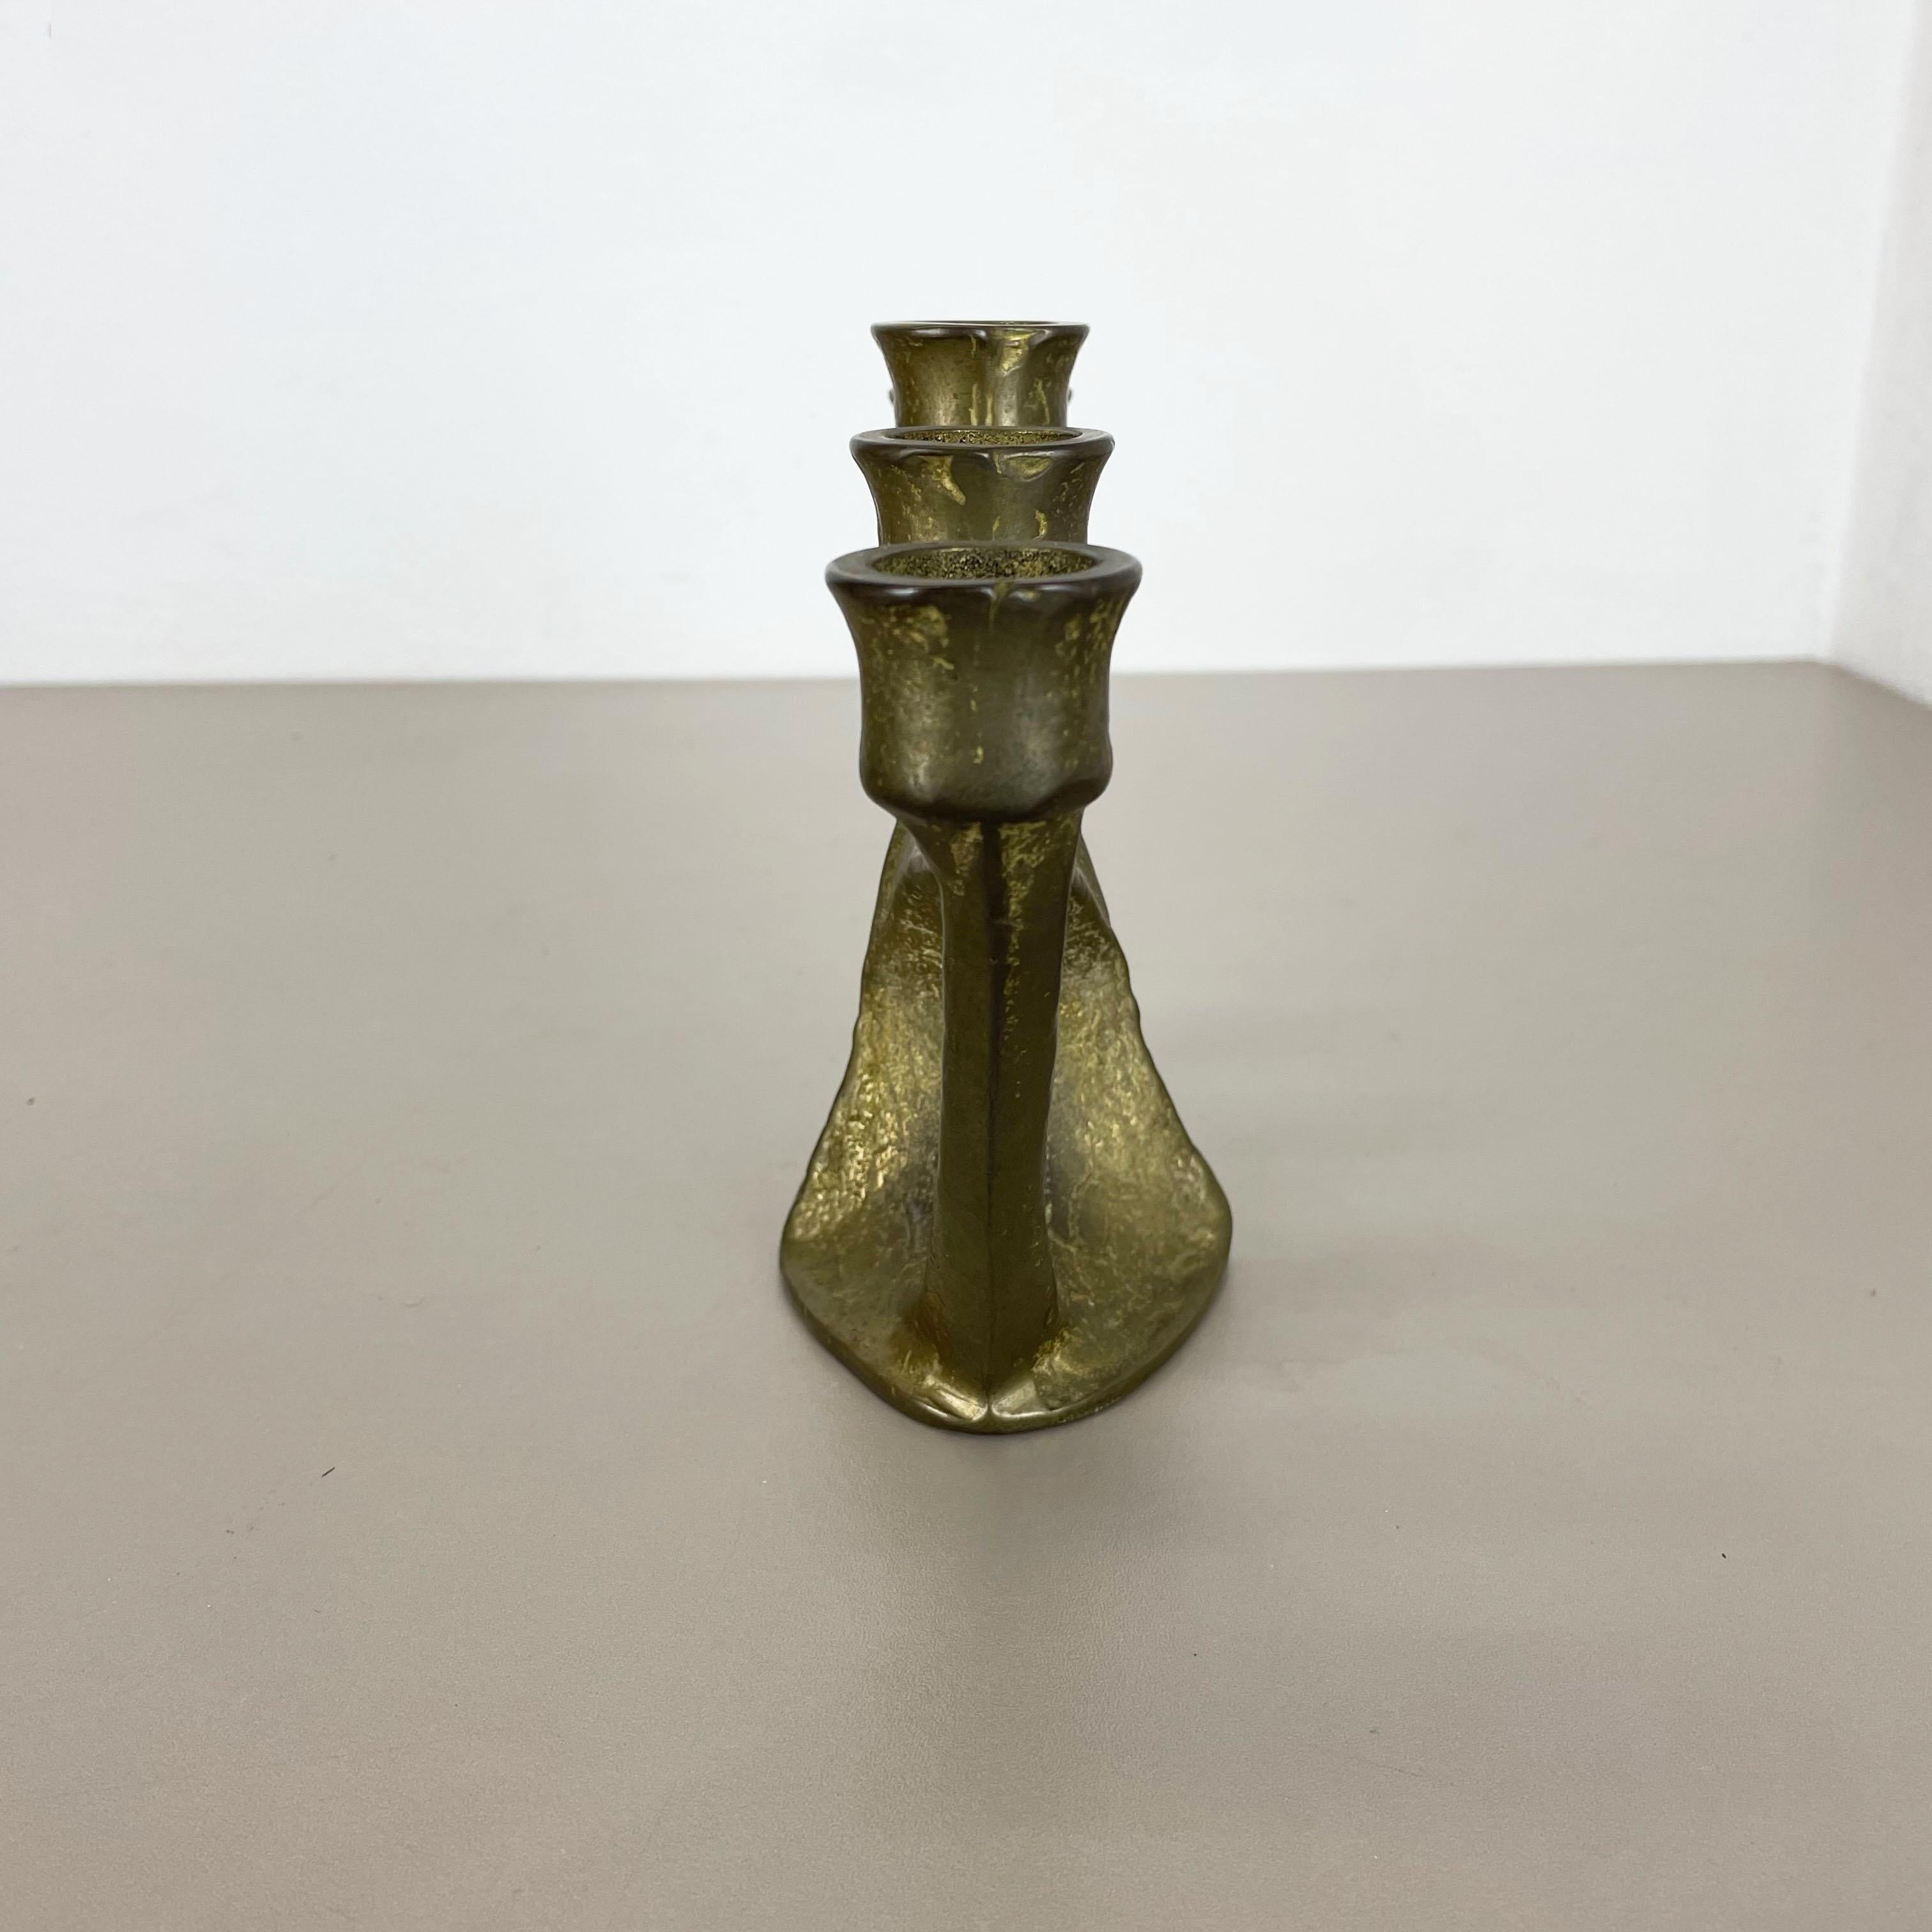 Modernist Sculptural Brutalist Brass Candleholder, Germany, 1970s For Sale 1